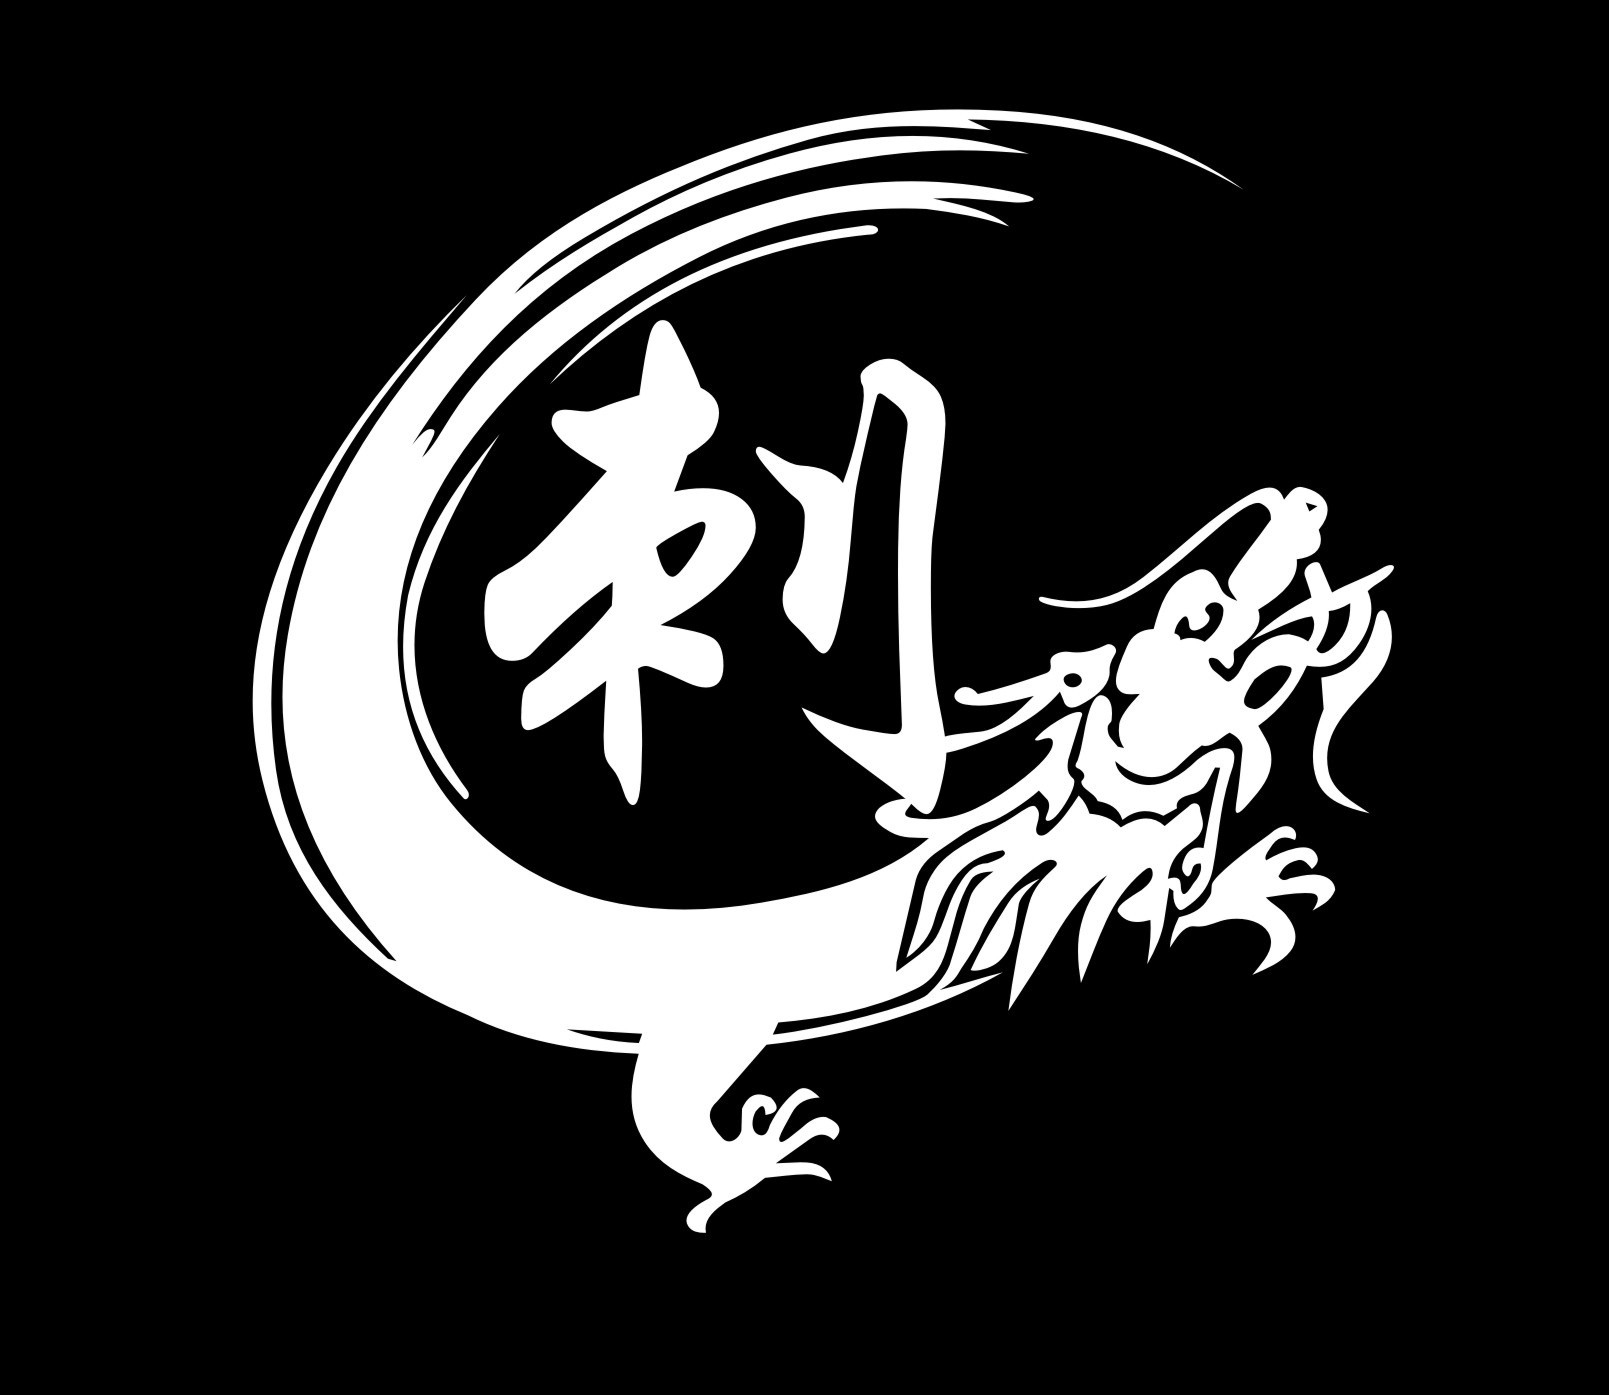 湖南刺龙汽车改装俱乐部 Logo